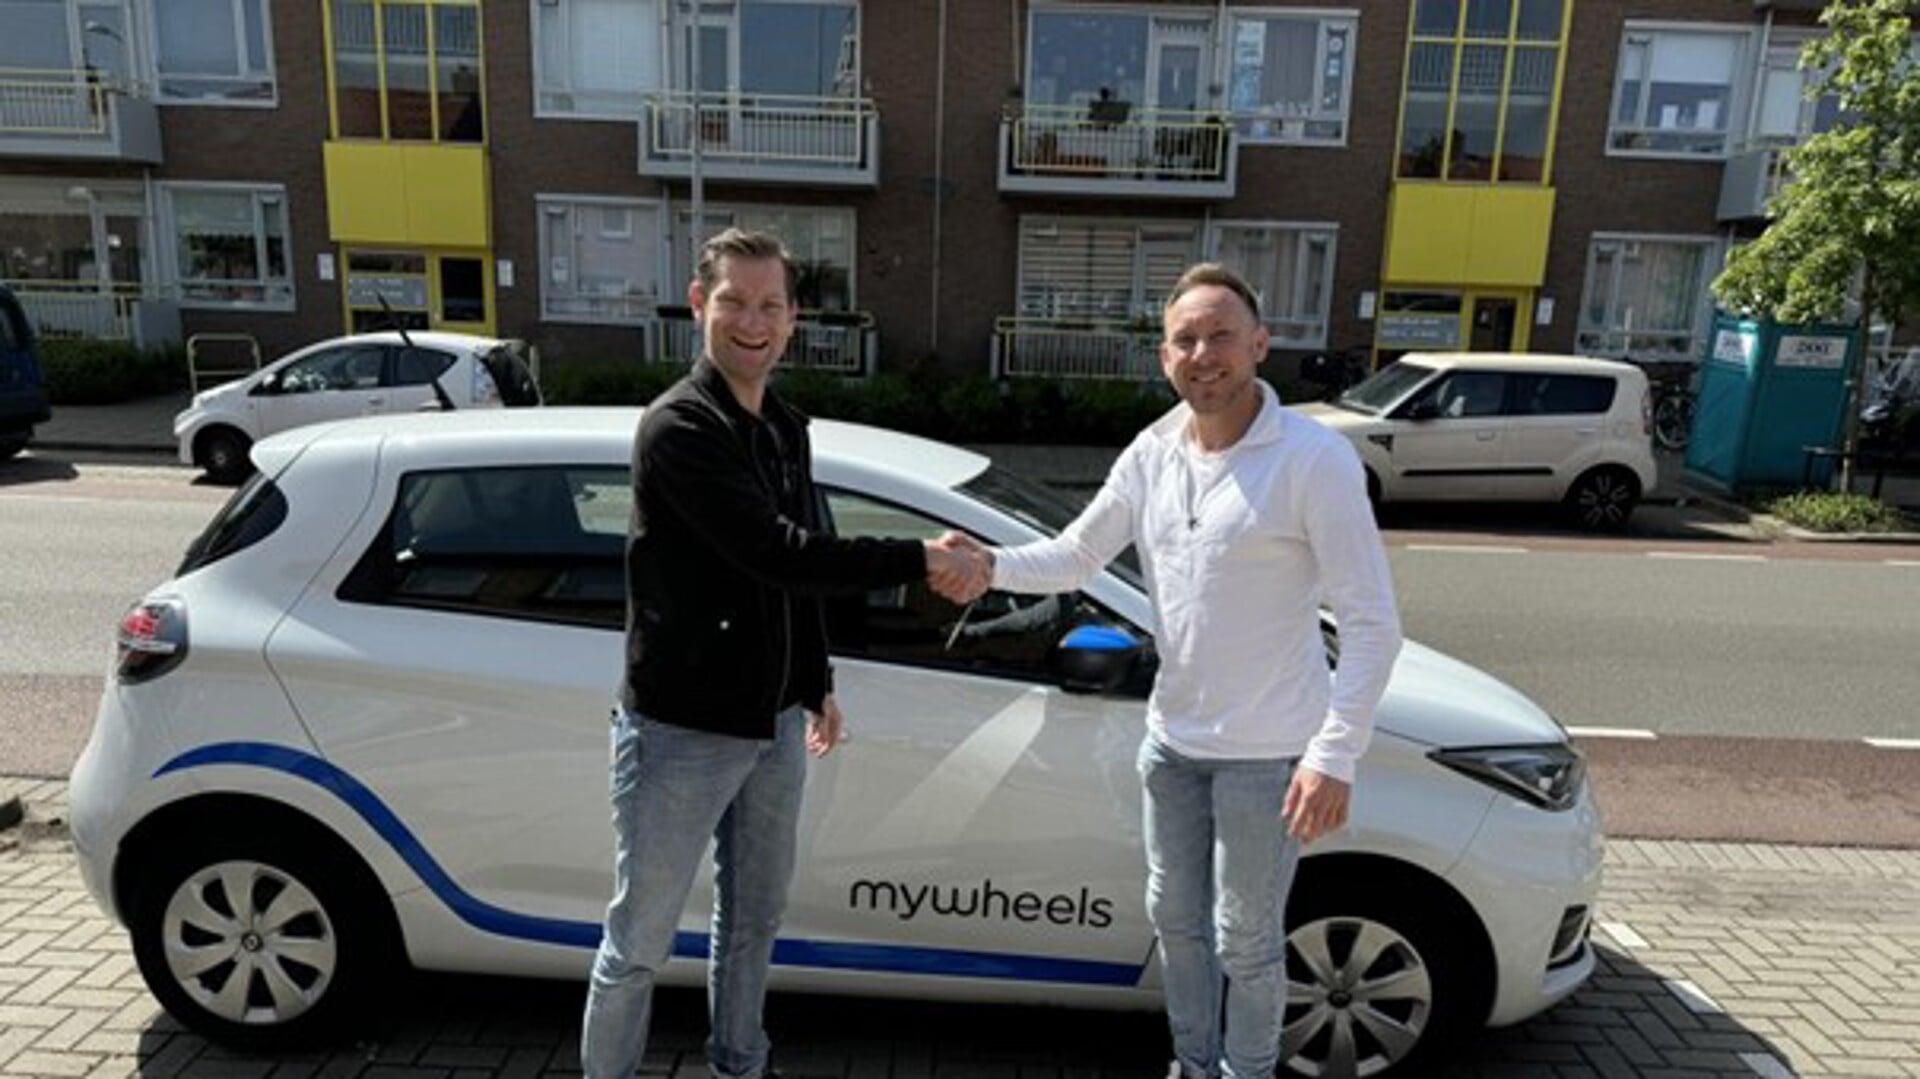 Wethouder Jeffrey Keus samen met Dani Sprecher van Mywheels voor de eerste deelauto in de wijk Leidschendam-Zuid (foto: gemeente LV).